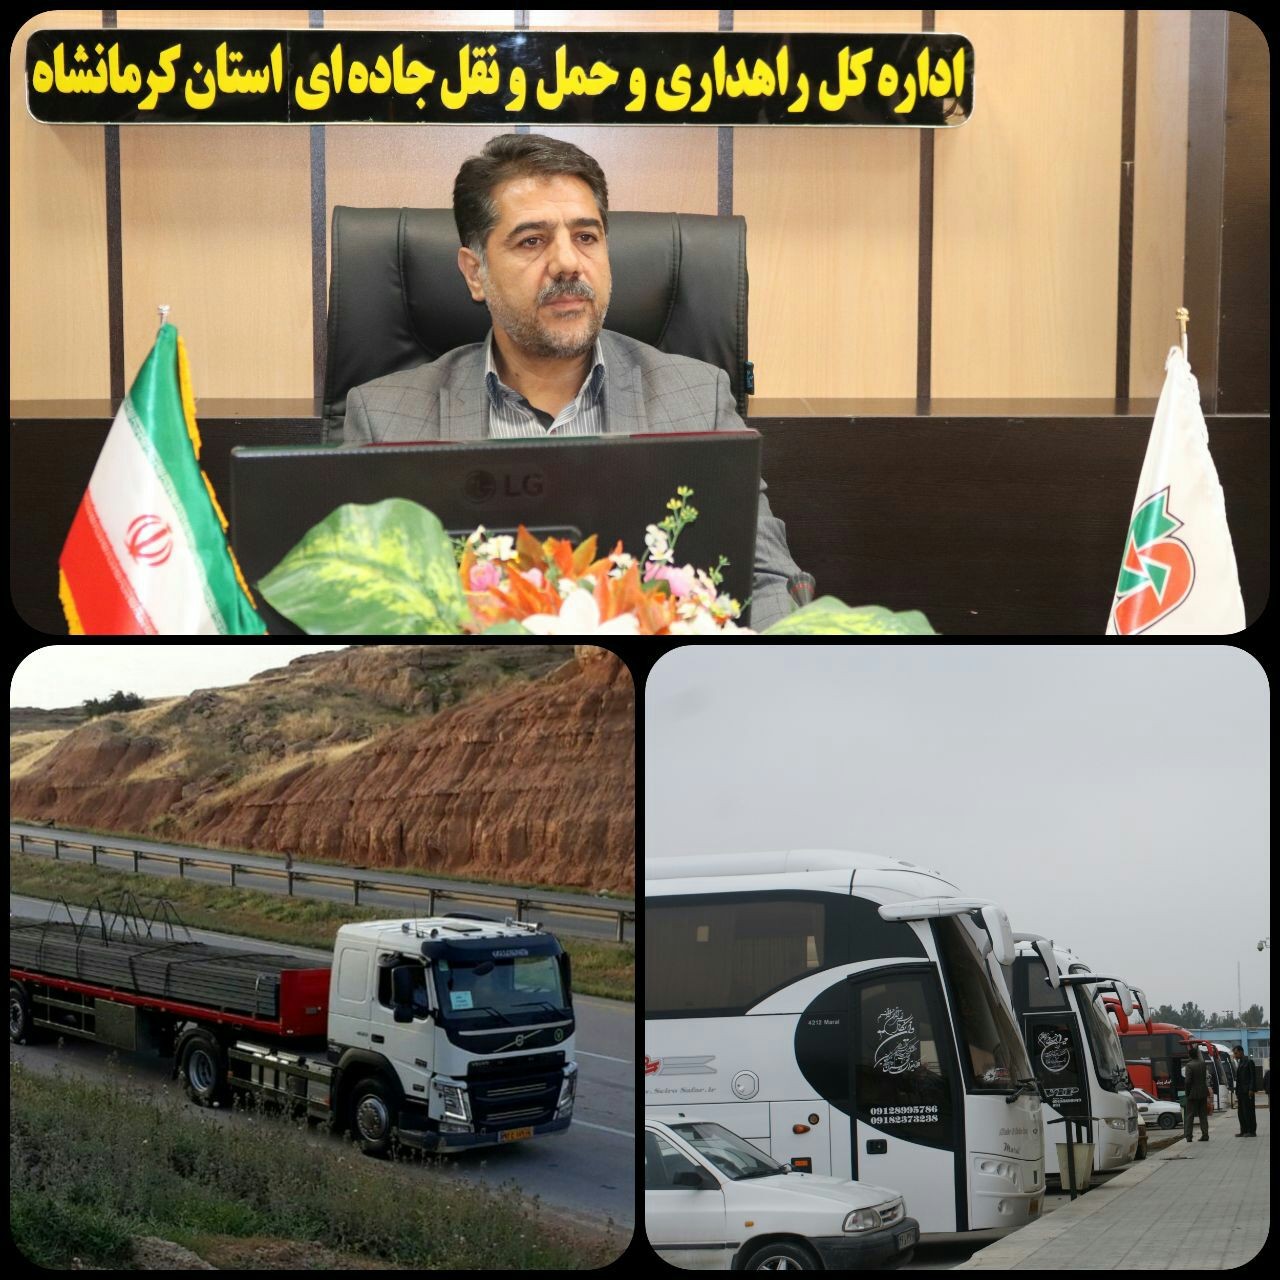 رسیدگی به ۱۰۶ پرونده تخلف شرکت های حمل ونقل در استان کرمانشاه